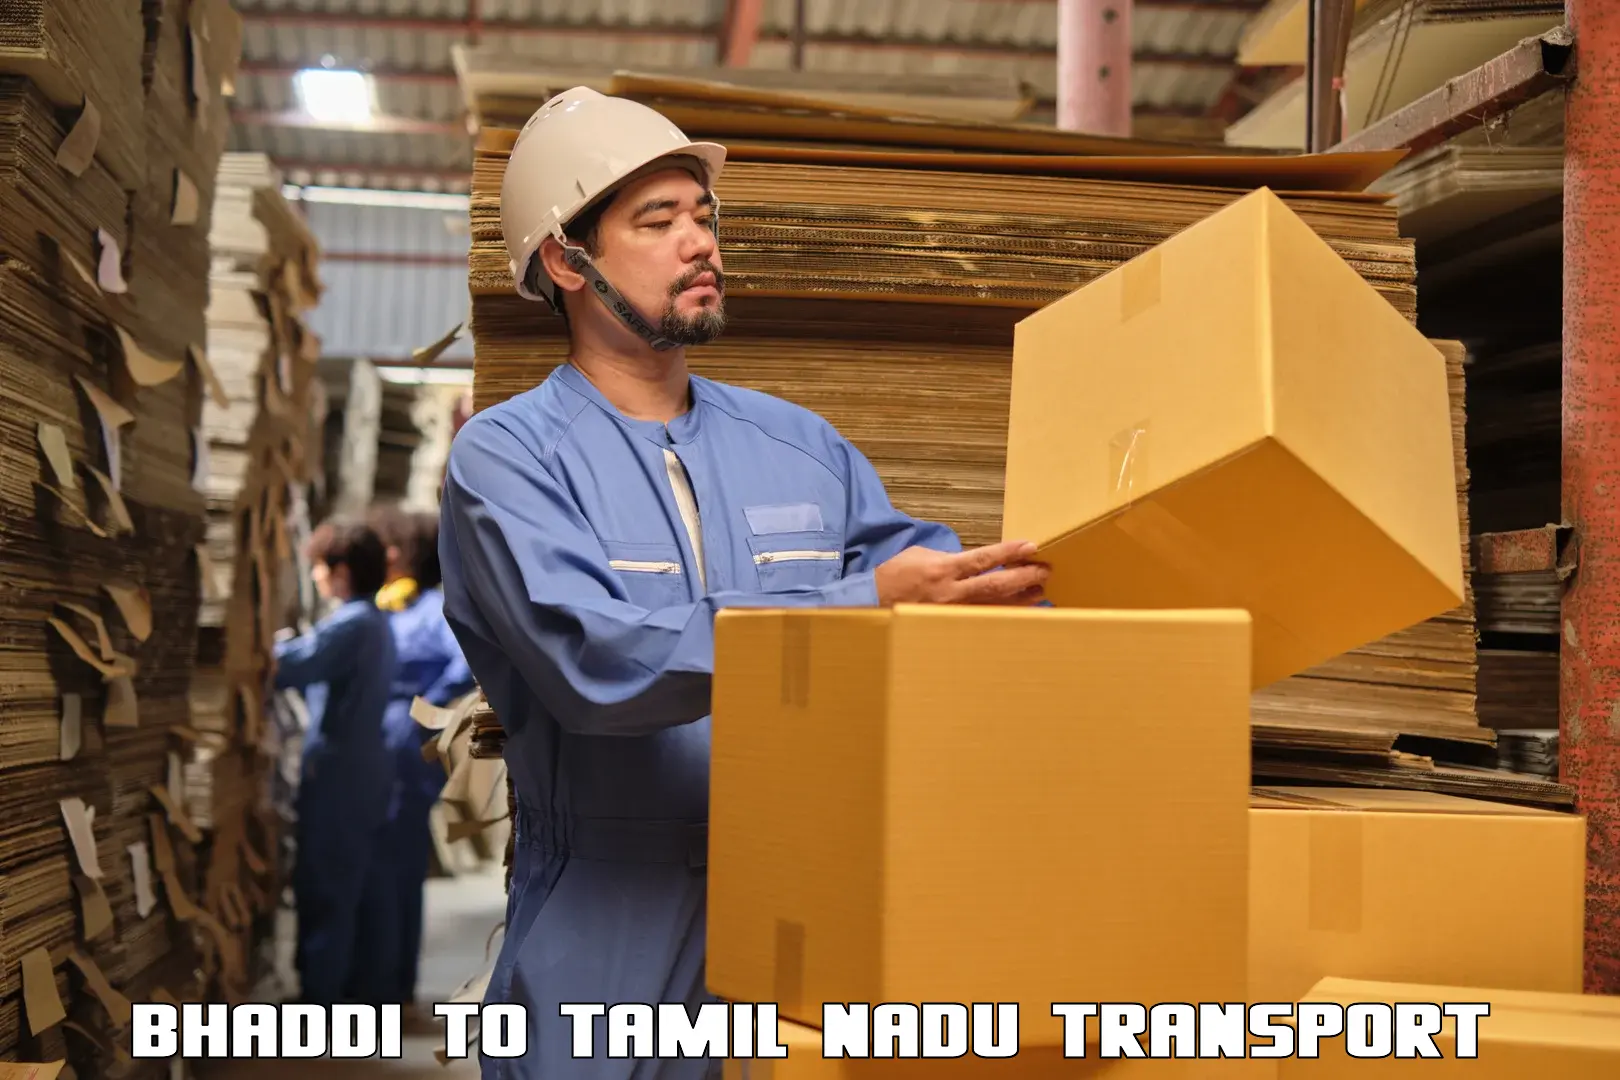 Shipping partner Bhaddi to Tiruppur